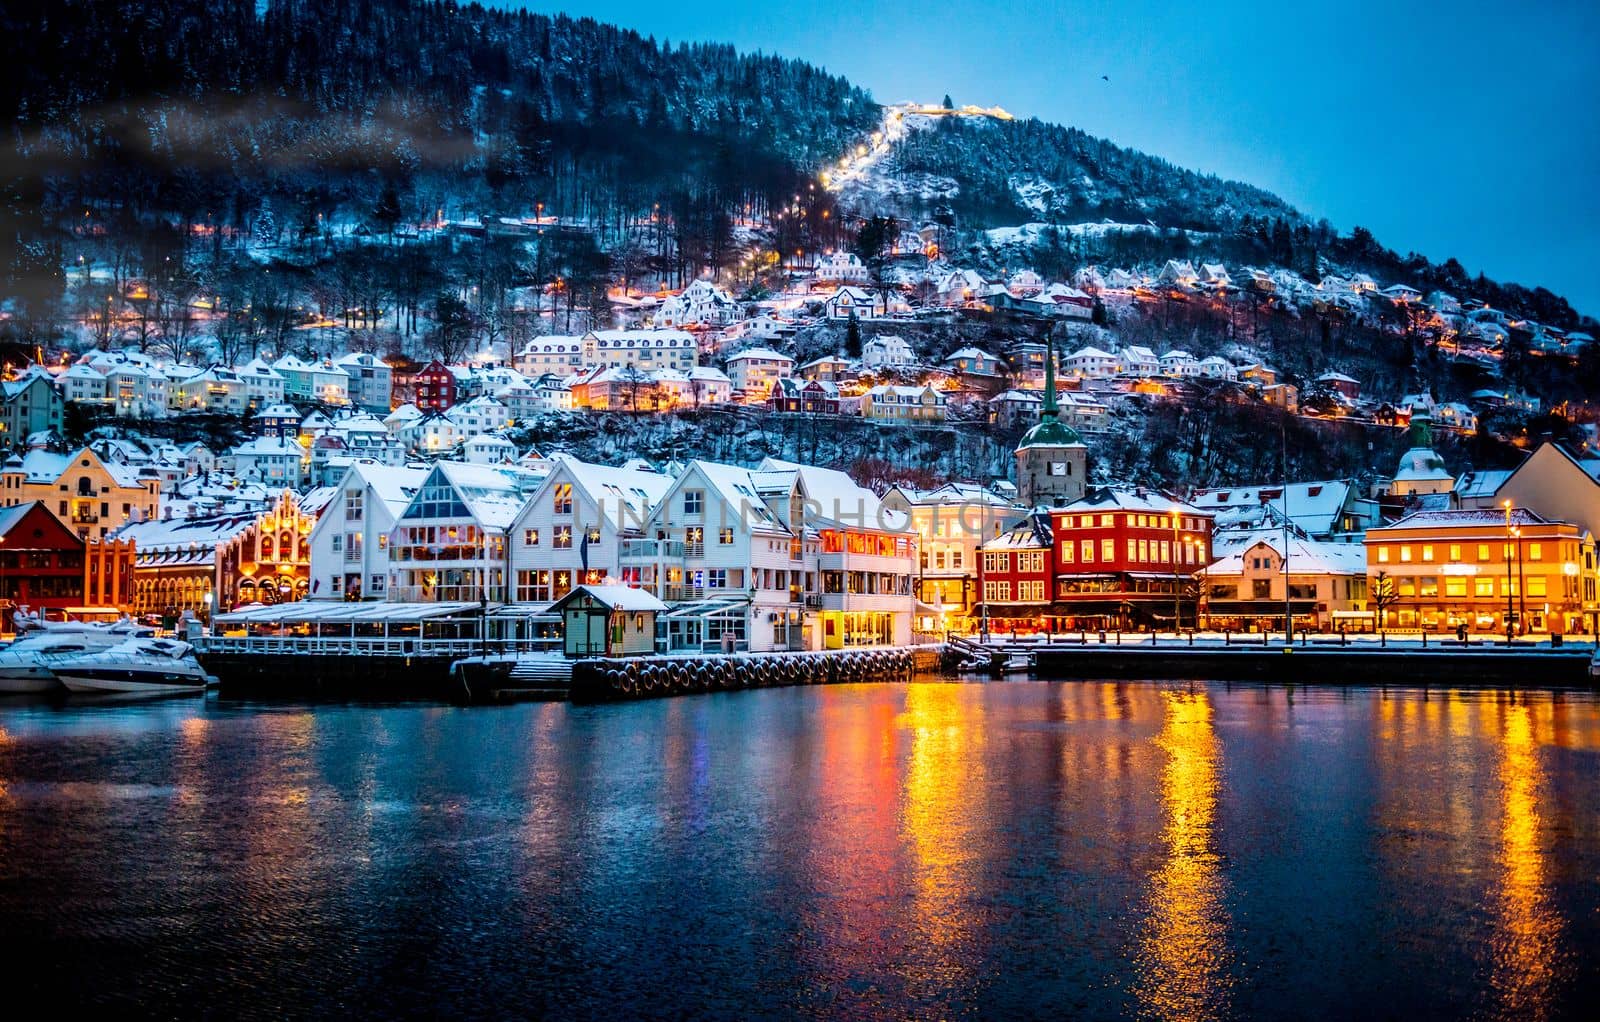 Bergen city in Norway by tan4ikk1